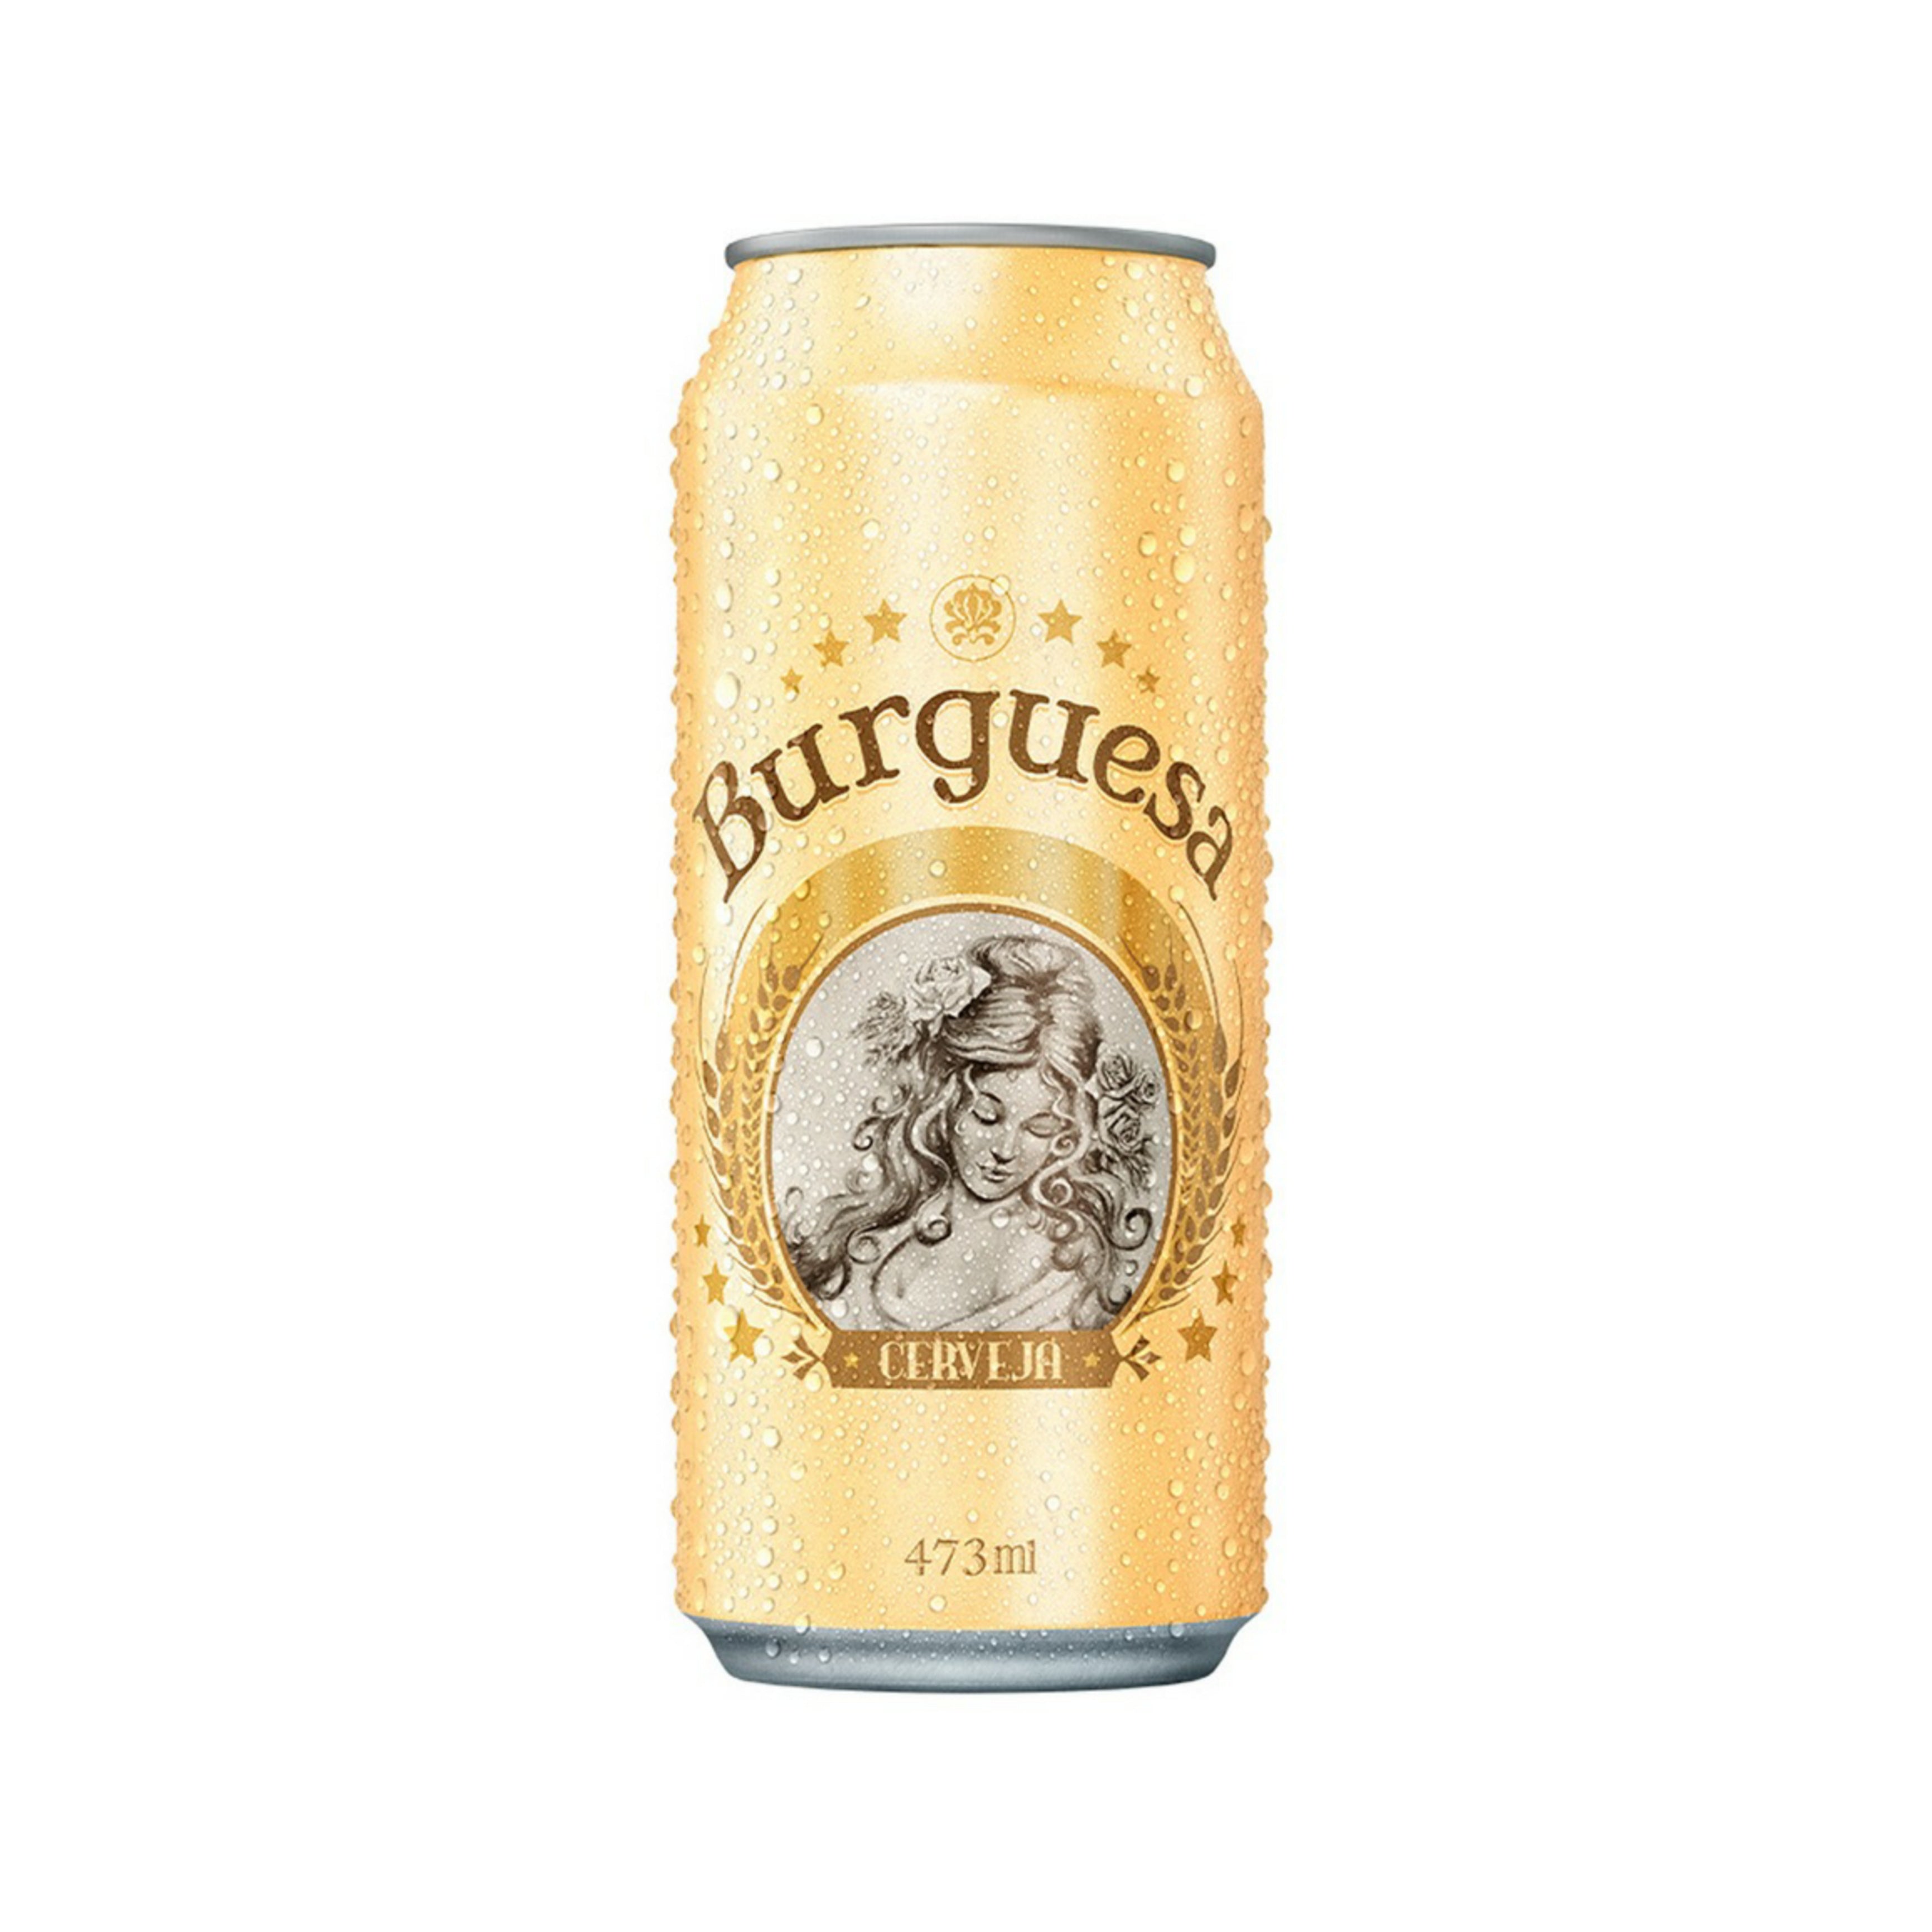 cerveza-burguesa-de-473-ml